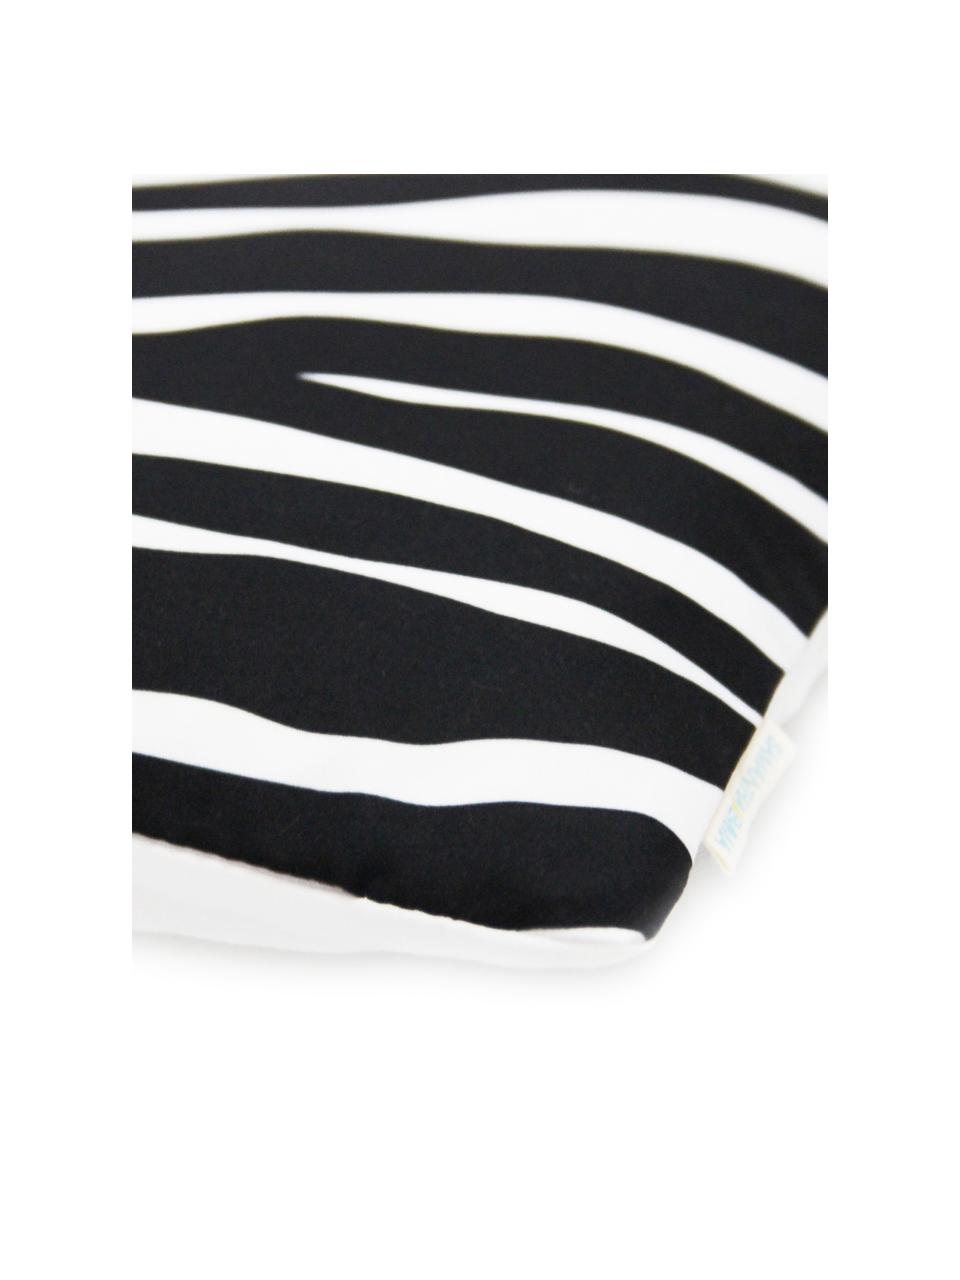 Kissenhülle Pattern mit Zebra Print in Schwarz/Weiss, 100% Polyester, Weiss, Schwarz, 45 x 45 cm